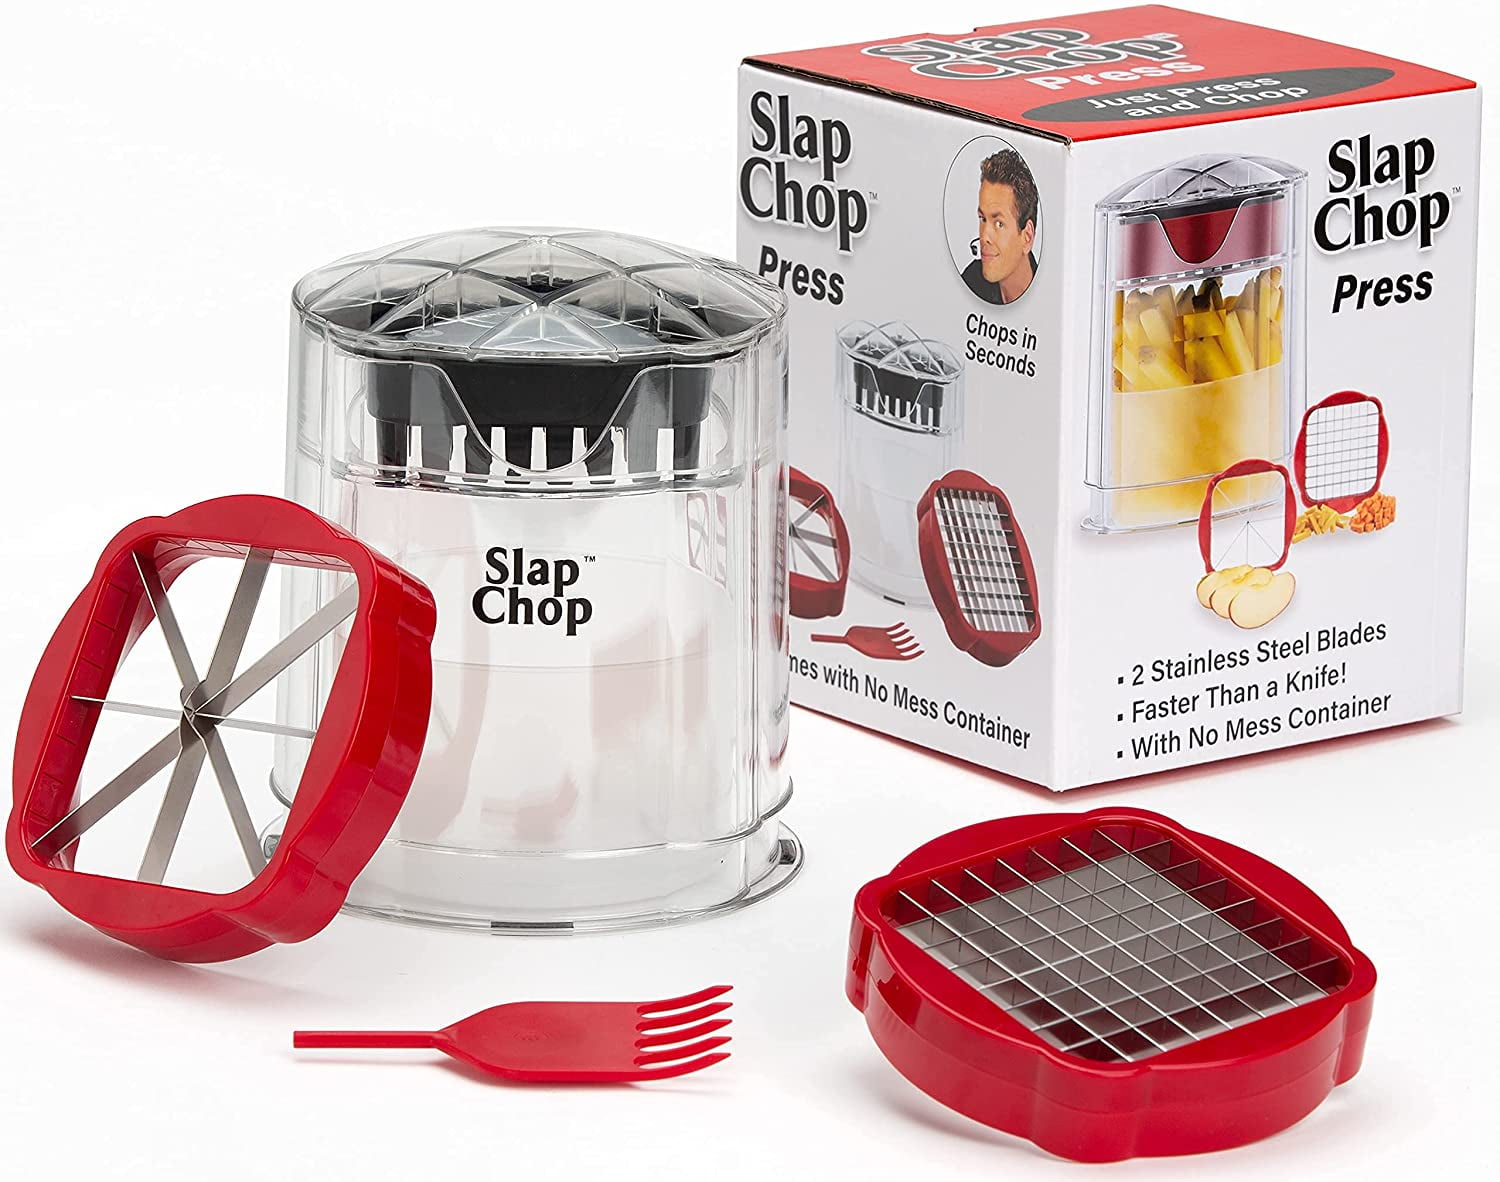 2014 Hot Slap Chop Dice-Chop-Mint in Seconds - China Slap Chop